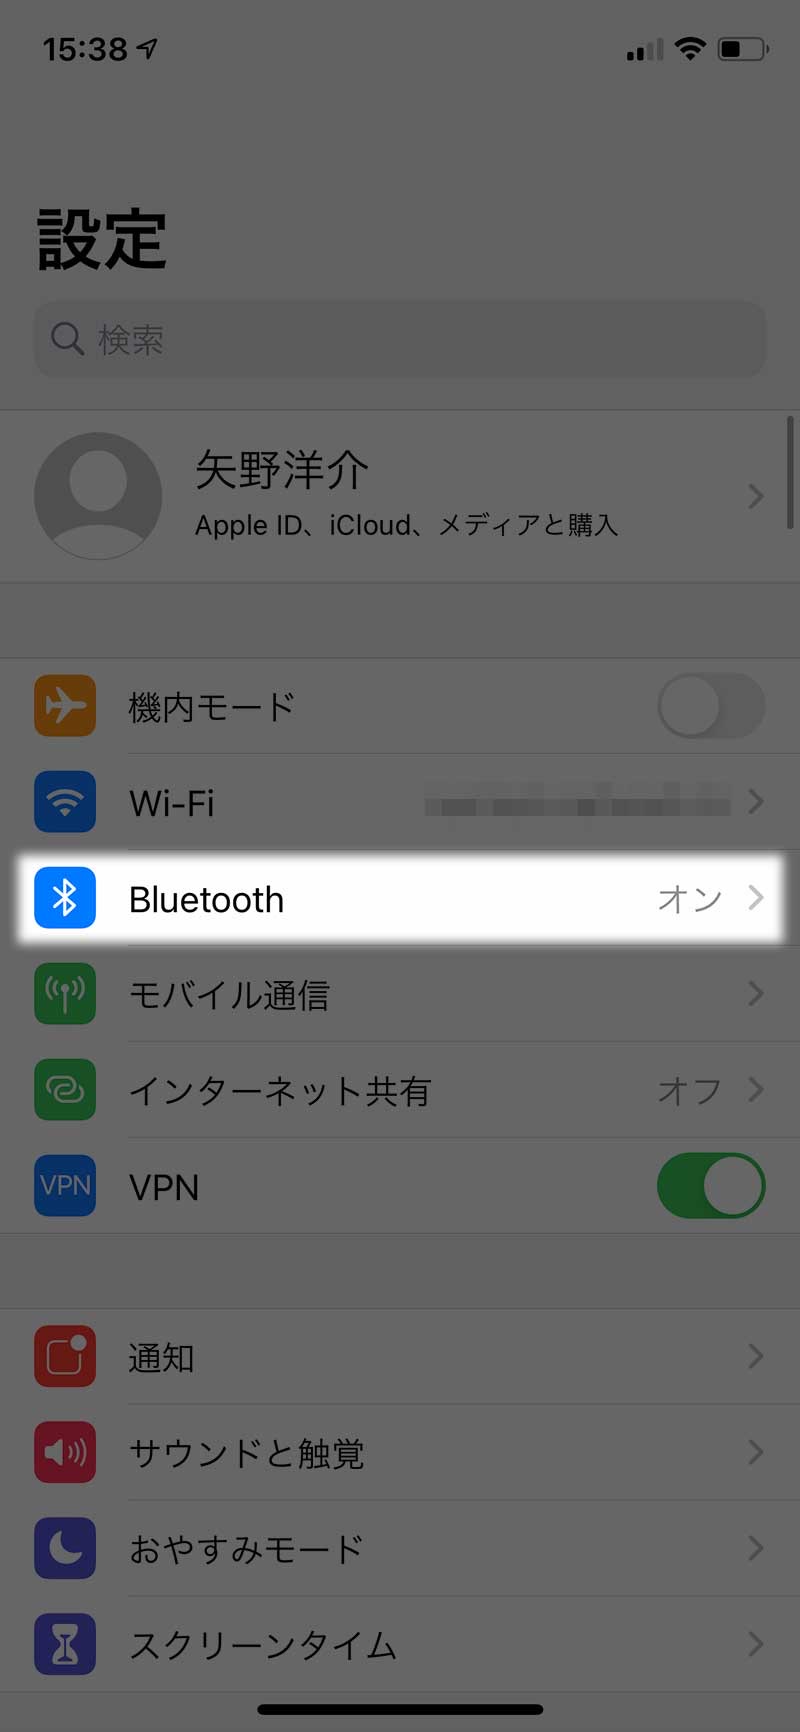 「Bluetooth」をタップ